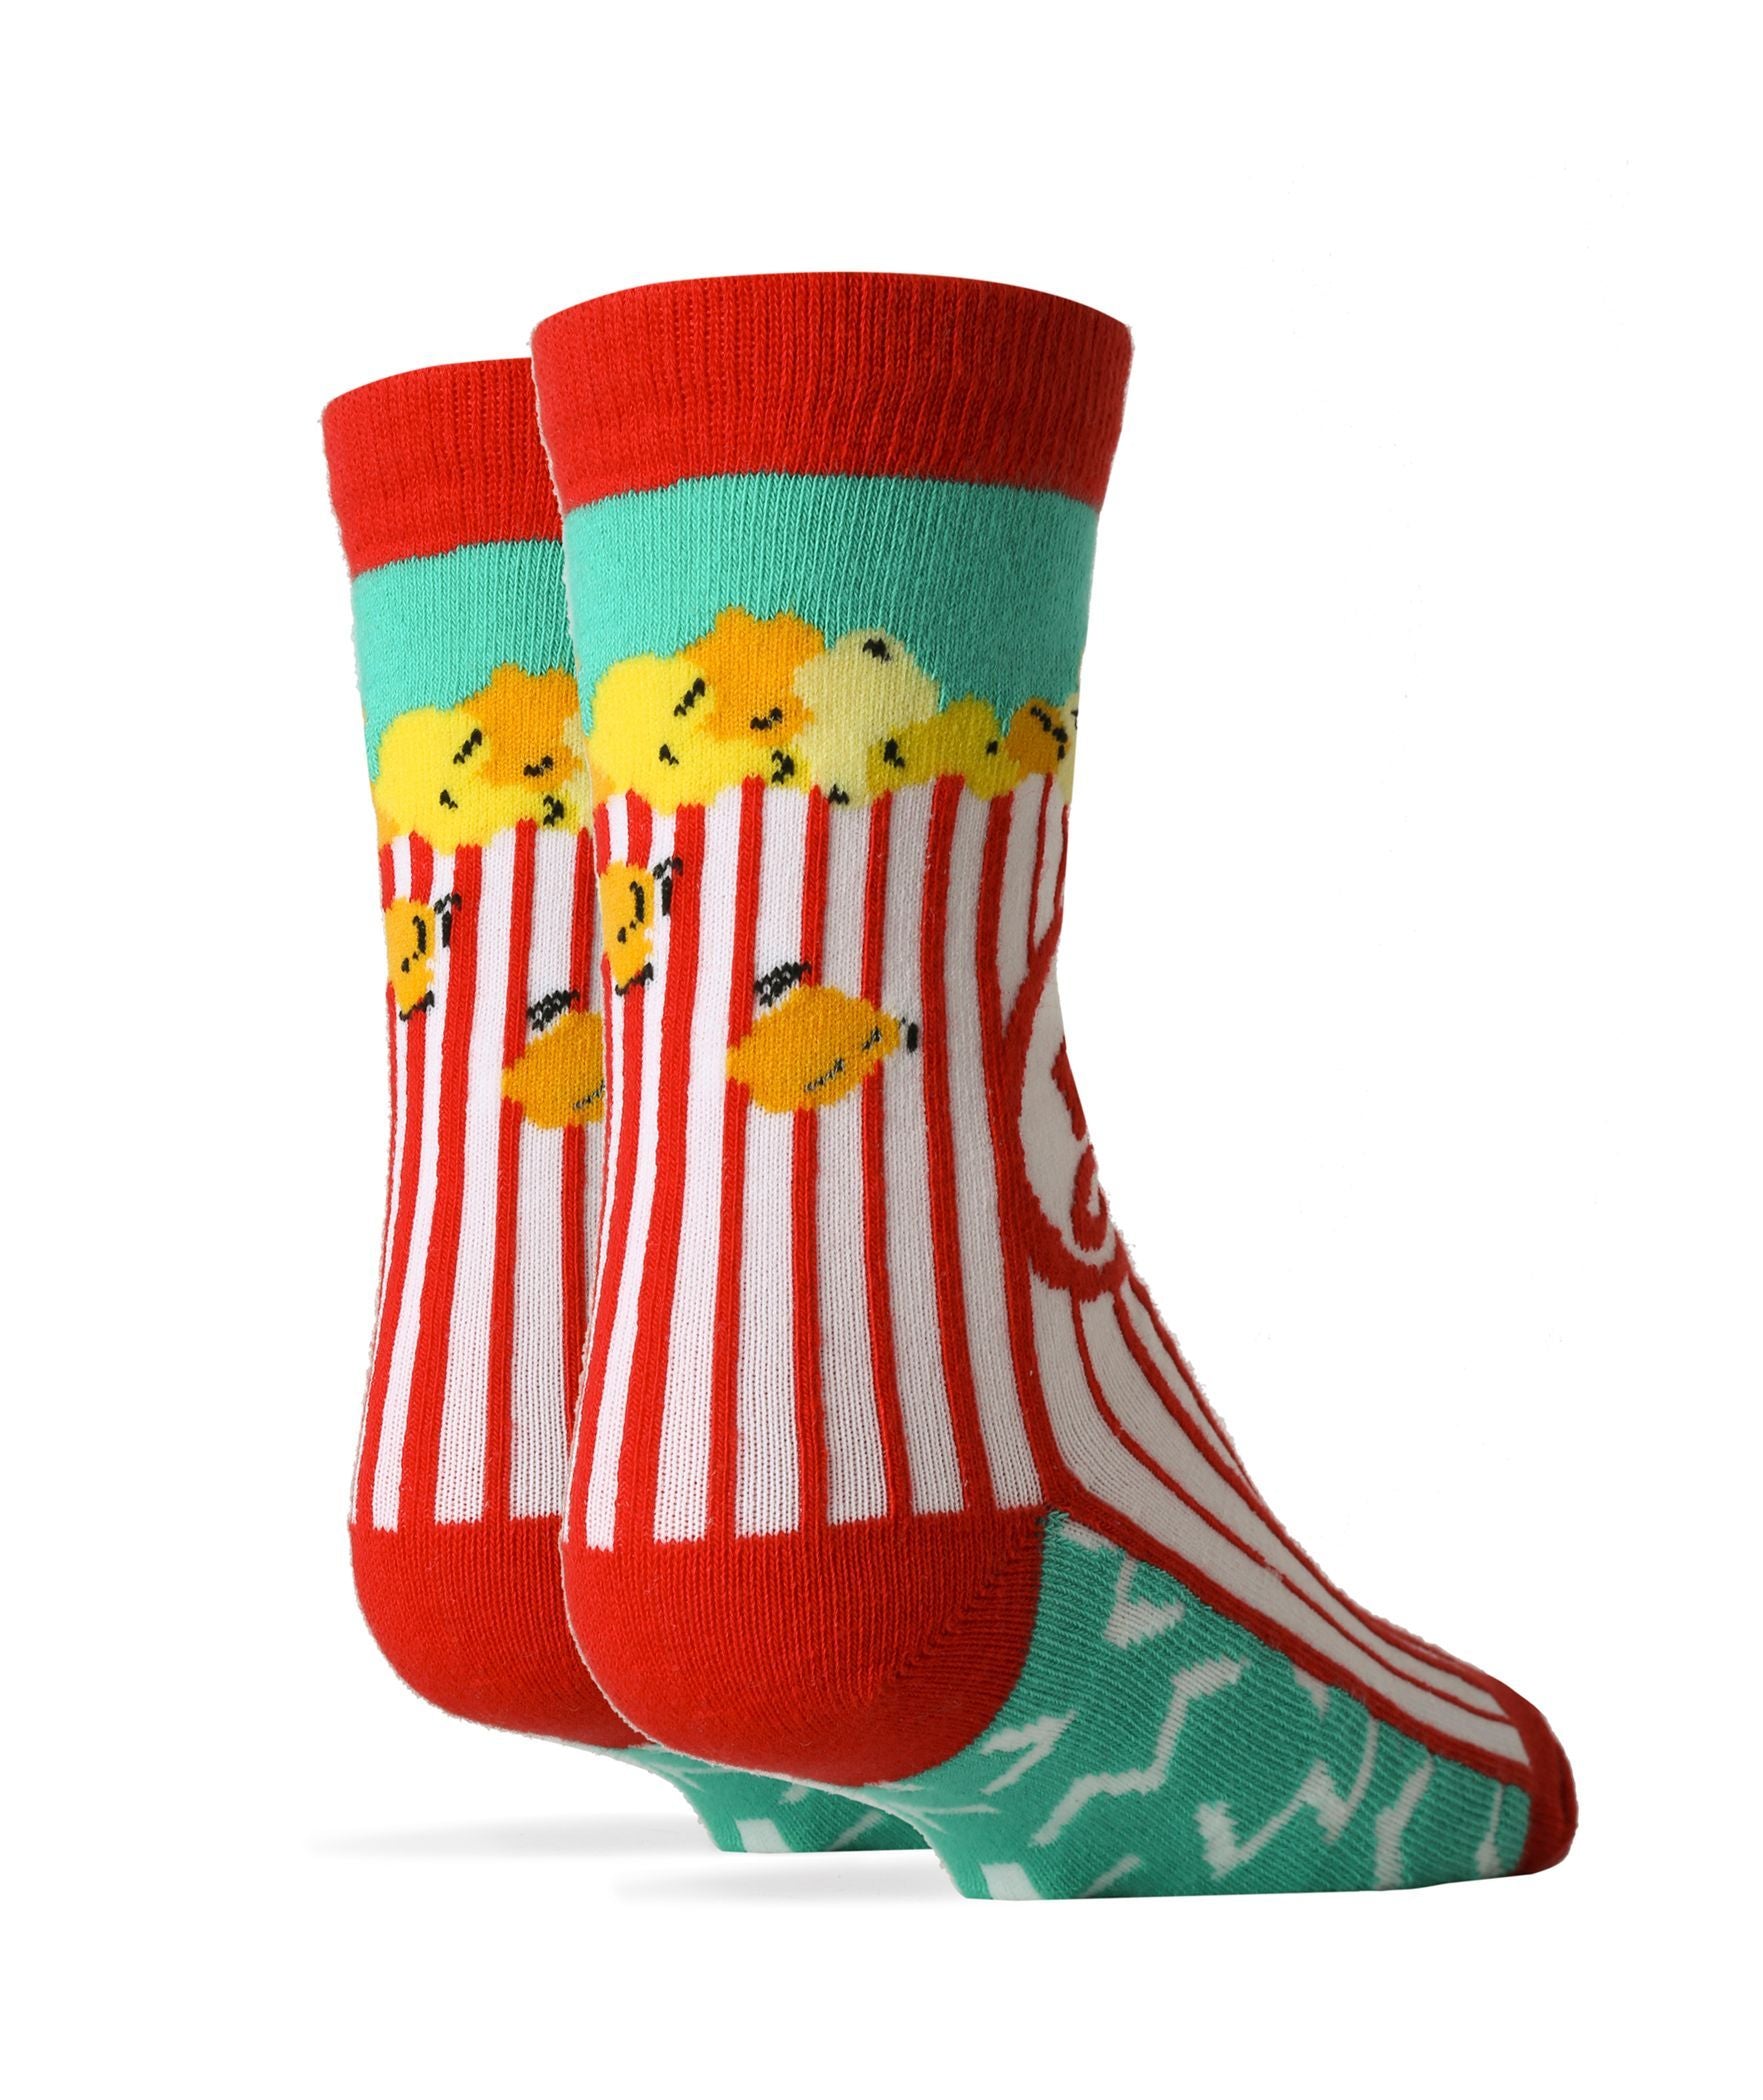 Box O' Popcorn Socks